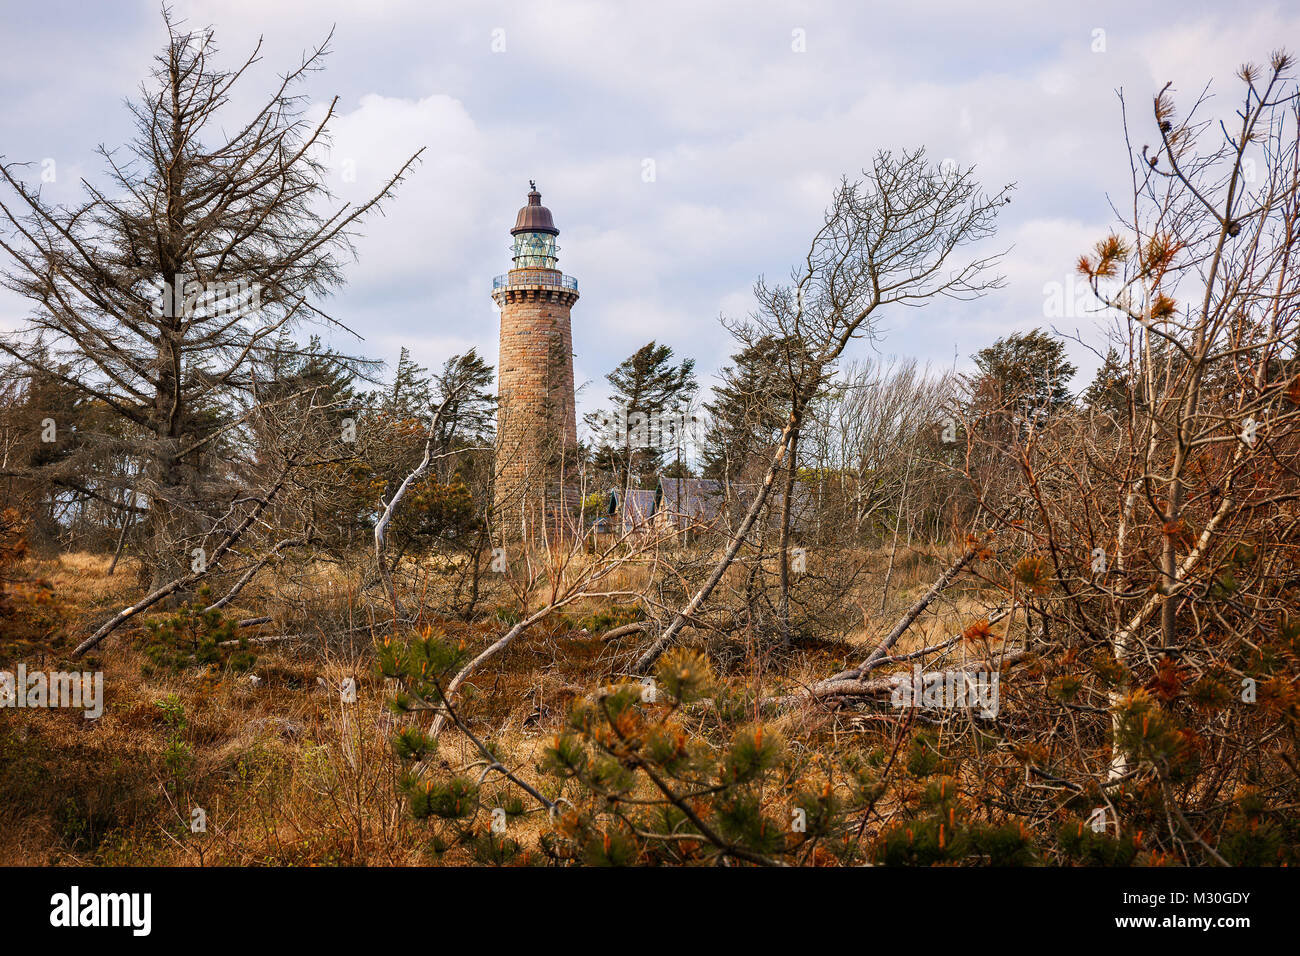 Der Leuchtturm Lodberg Fyr in der Nähe der Agger Dänemark wurde in einem Wald in der Nähe der Küste gebaut Stockfoto